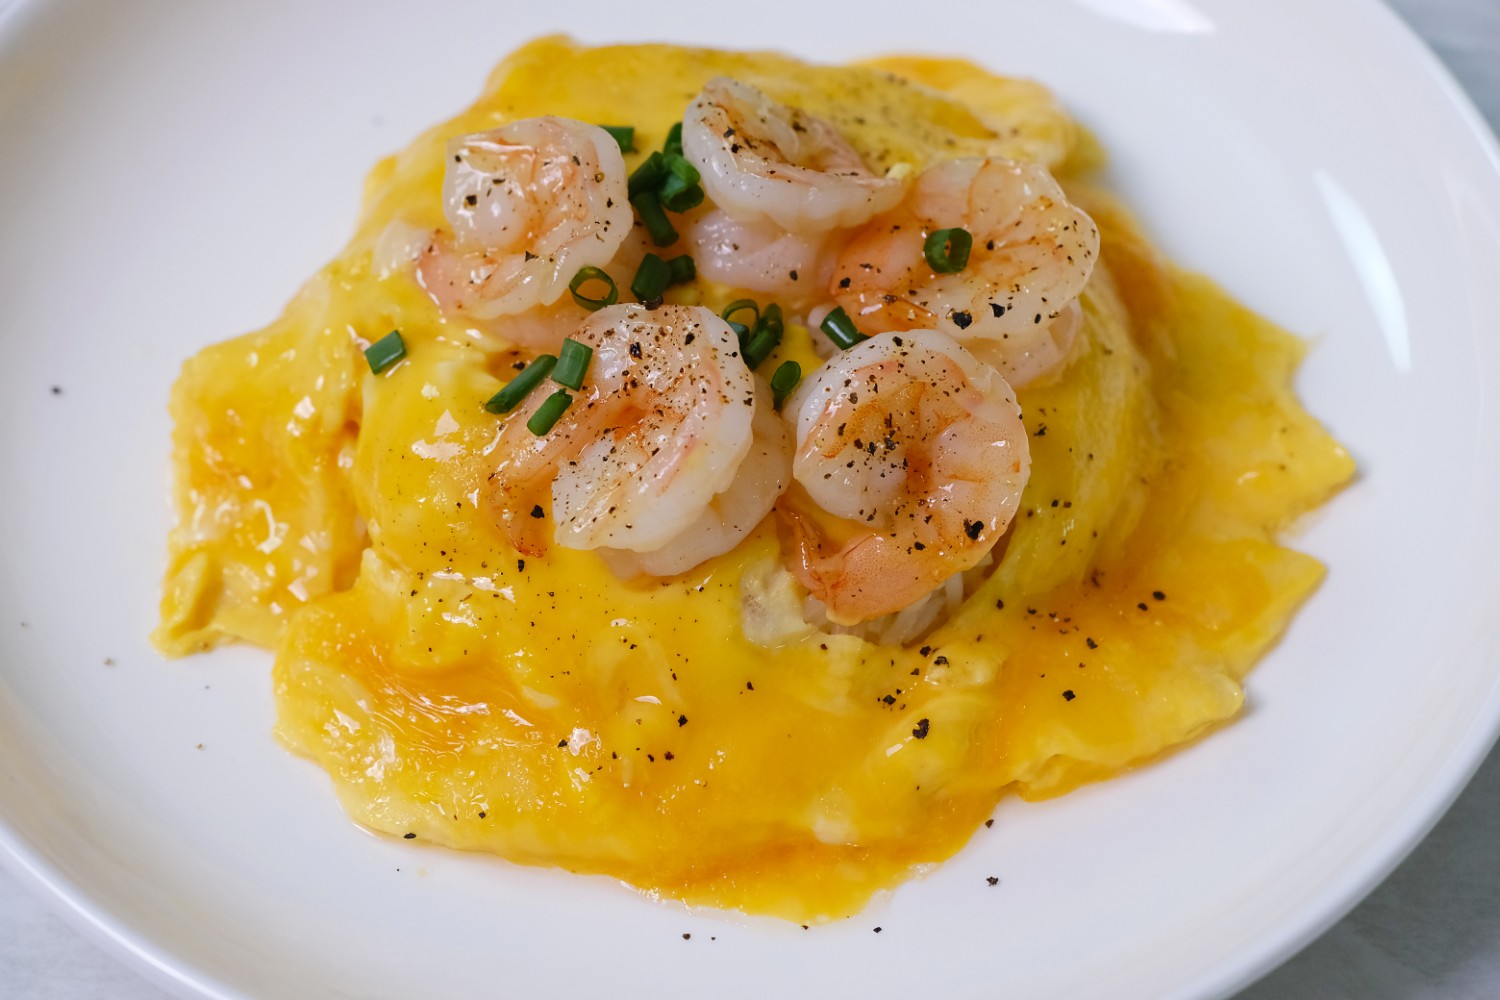 แจกสูตร "ข้าวไข่ข้นกุ้ง" สูตรกุ้งเด้งมากและไข่เยิ้มมม..ฟินๆ | Creamy Omelette with Shrimps on Rice - Pantip